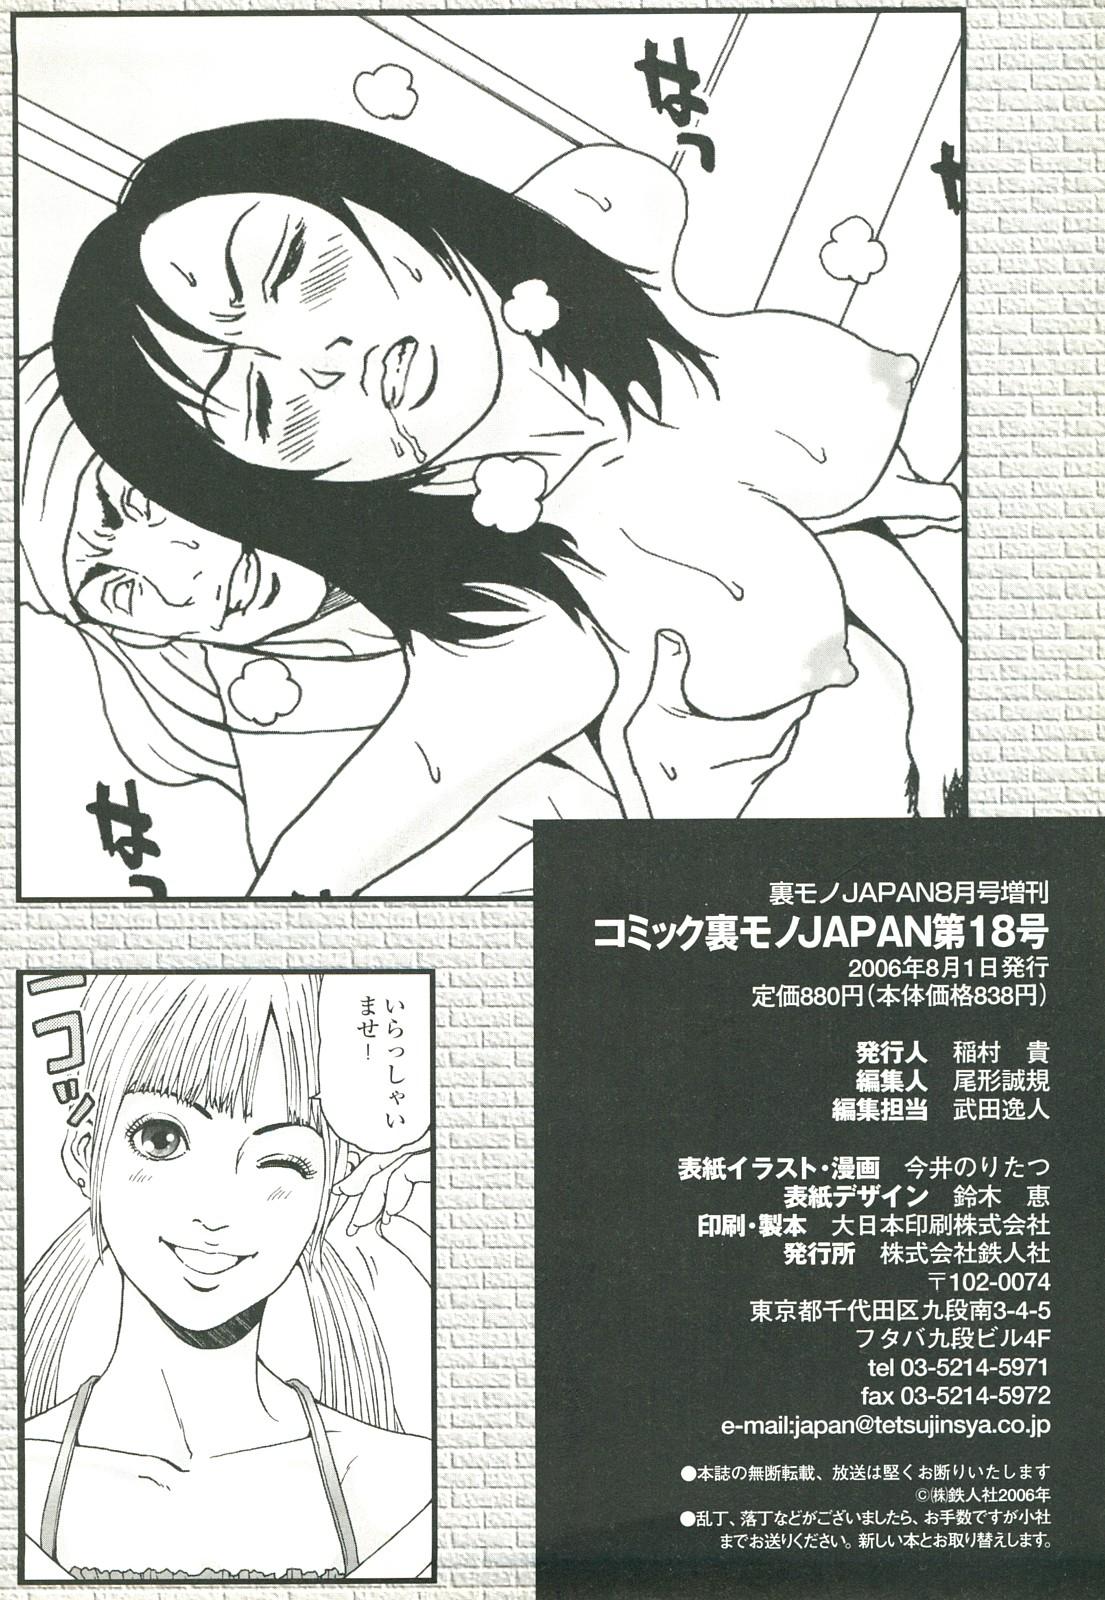 コミック裏モノJAPAN Vol.18 今井のりたつスペシャル号 289